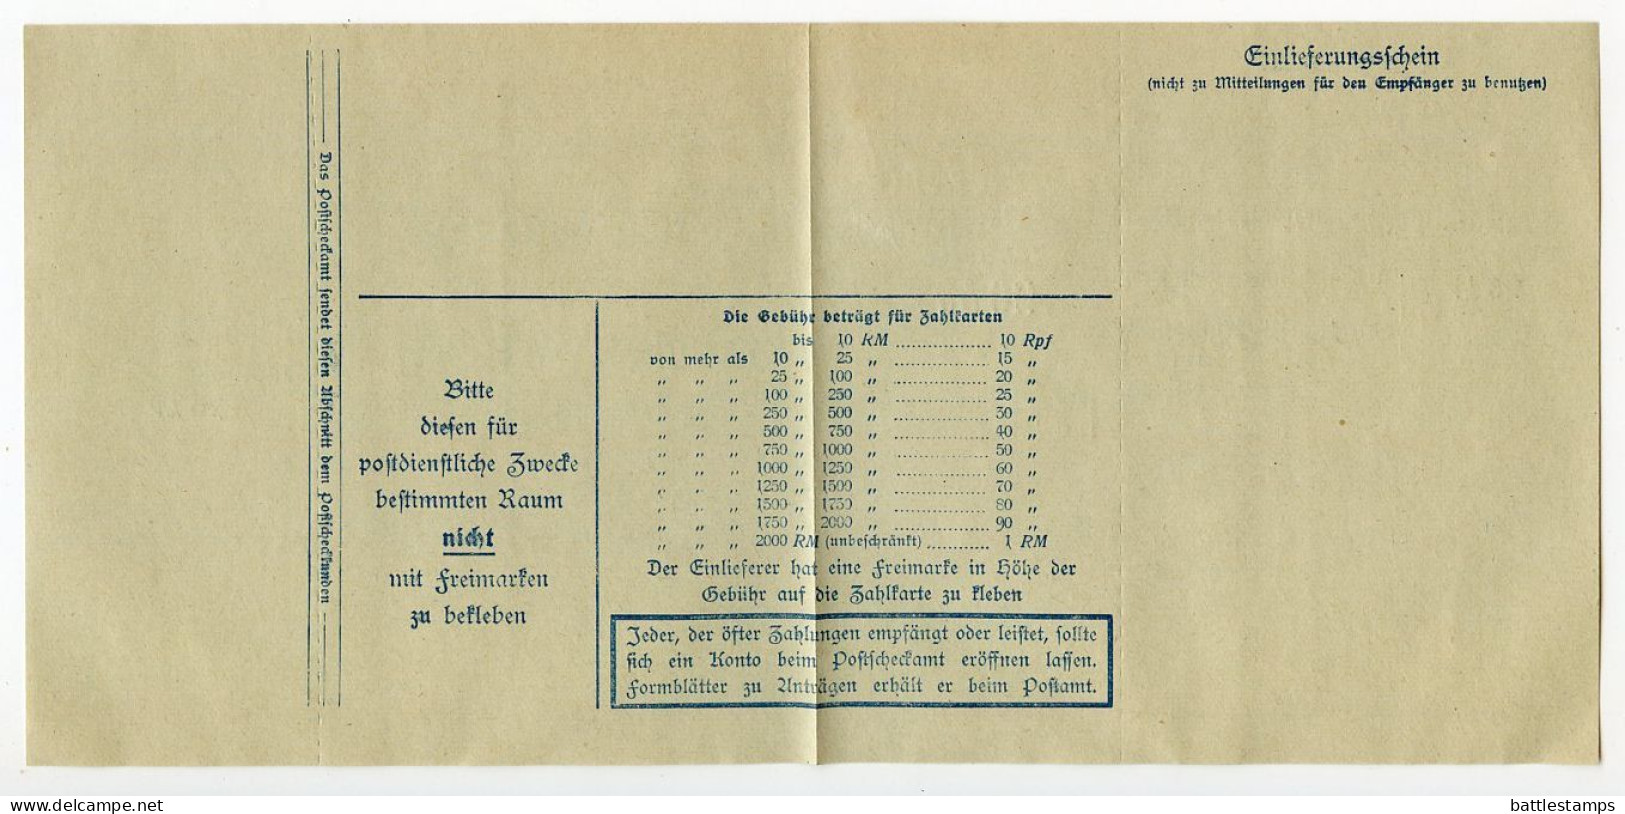 Germany 1934 Cover W/ Letter & Zahlkarte; Neuenkirchen (Kr. Melle) - Kreissparkasse Melle To Schiplage; 3pf. Hindenburg - Covers & Documents